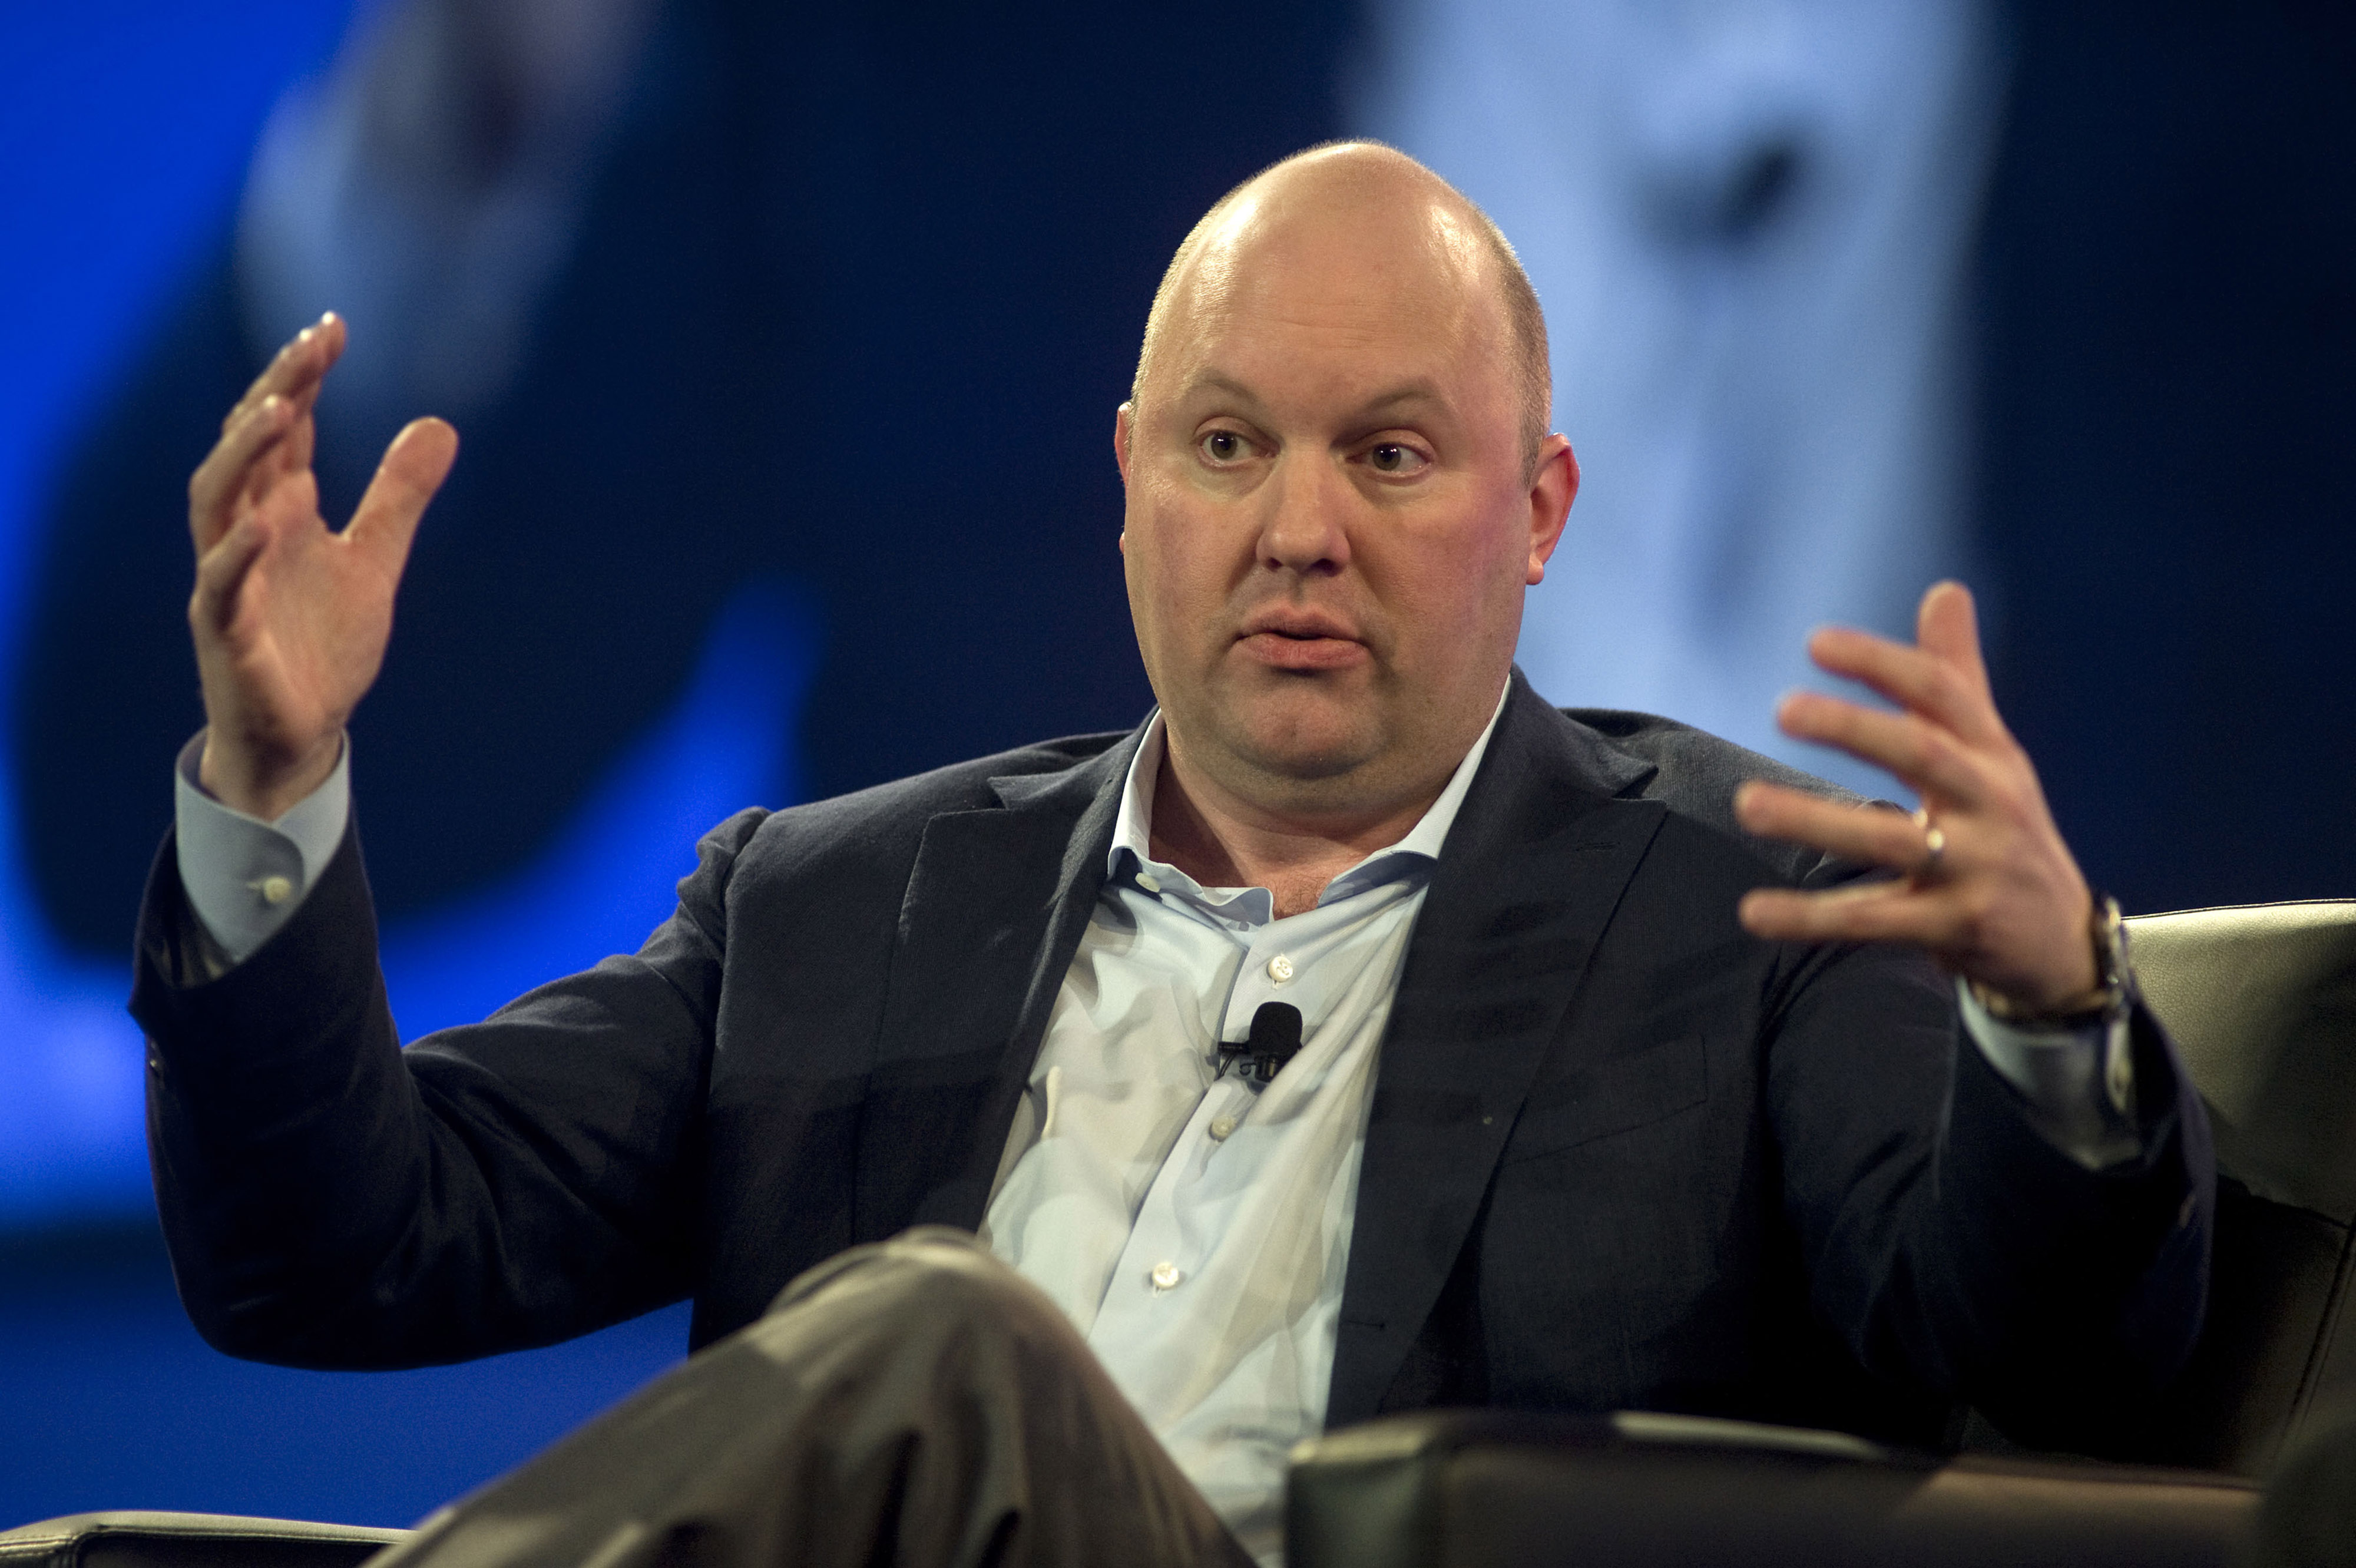 Der milliardenschwere Experte Marc Andreessen glaubt, dass KI-Berater sogar dazu beitragen könnten, Leben zu retten – weit entfernt von Ängsten vor dem Maschinenuntergang